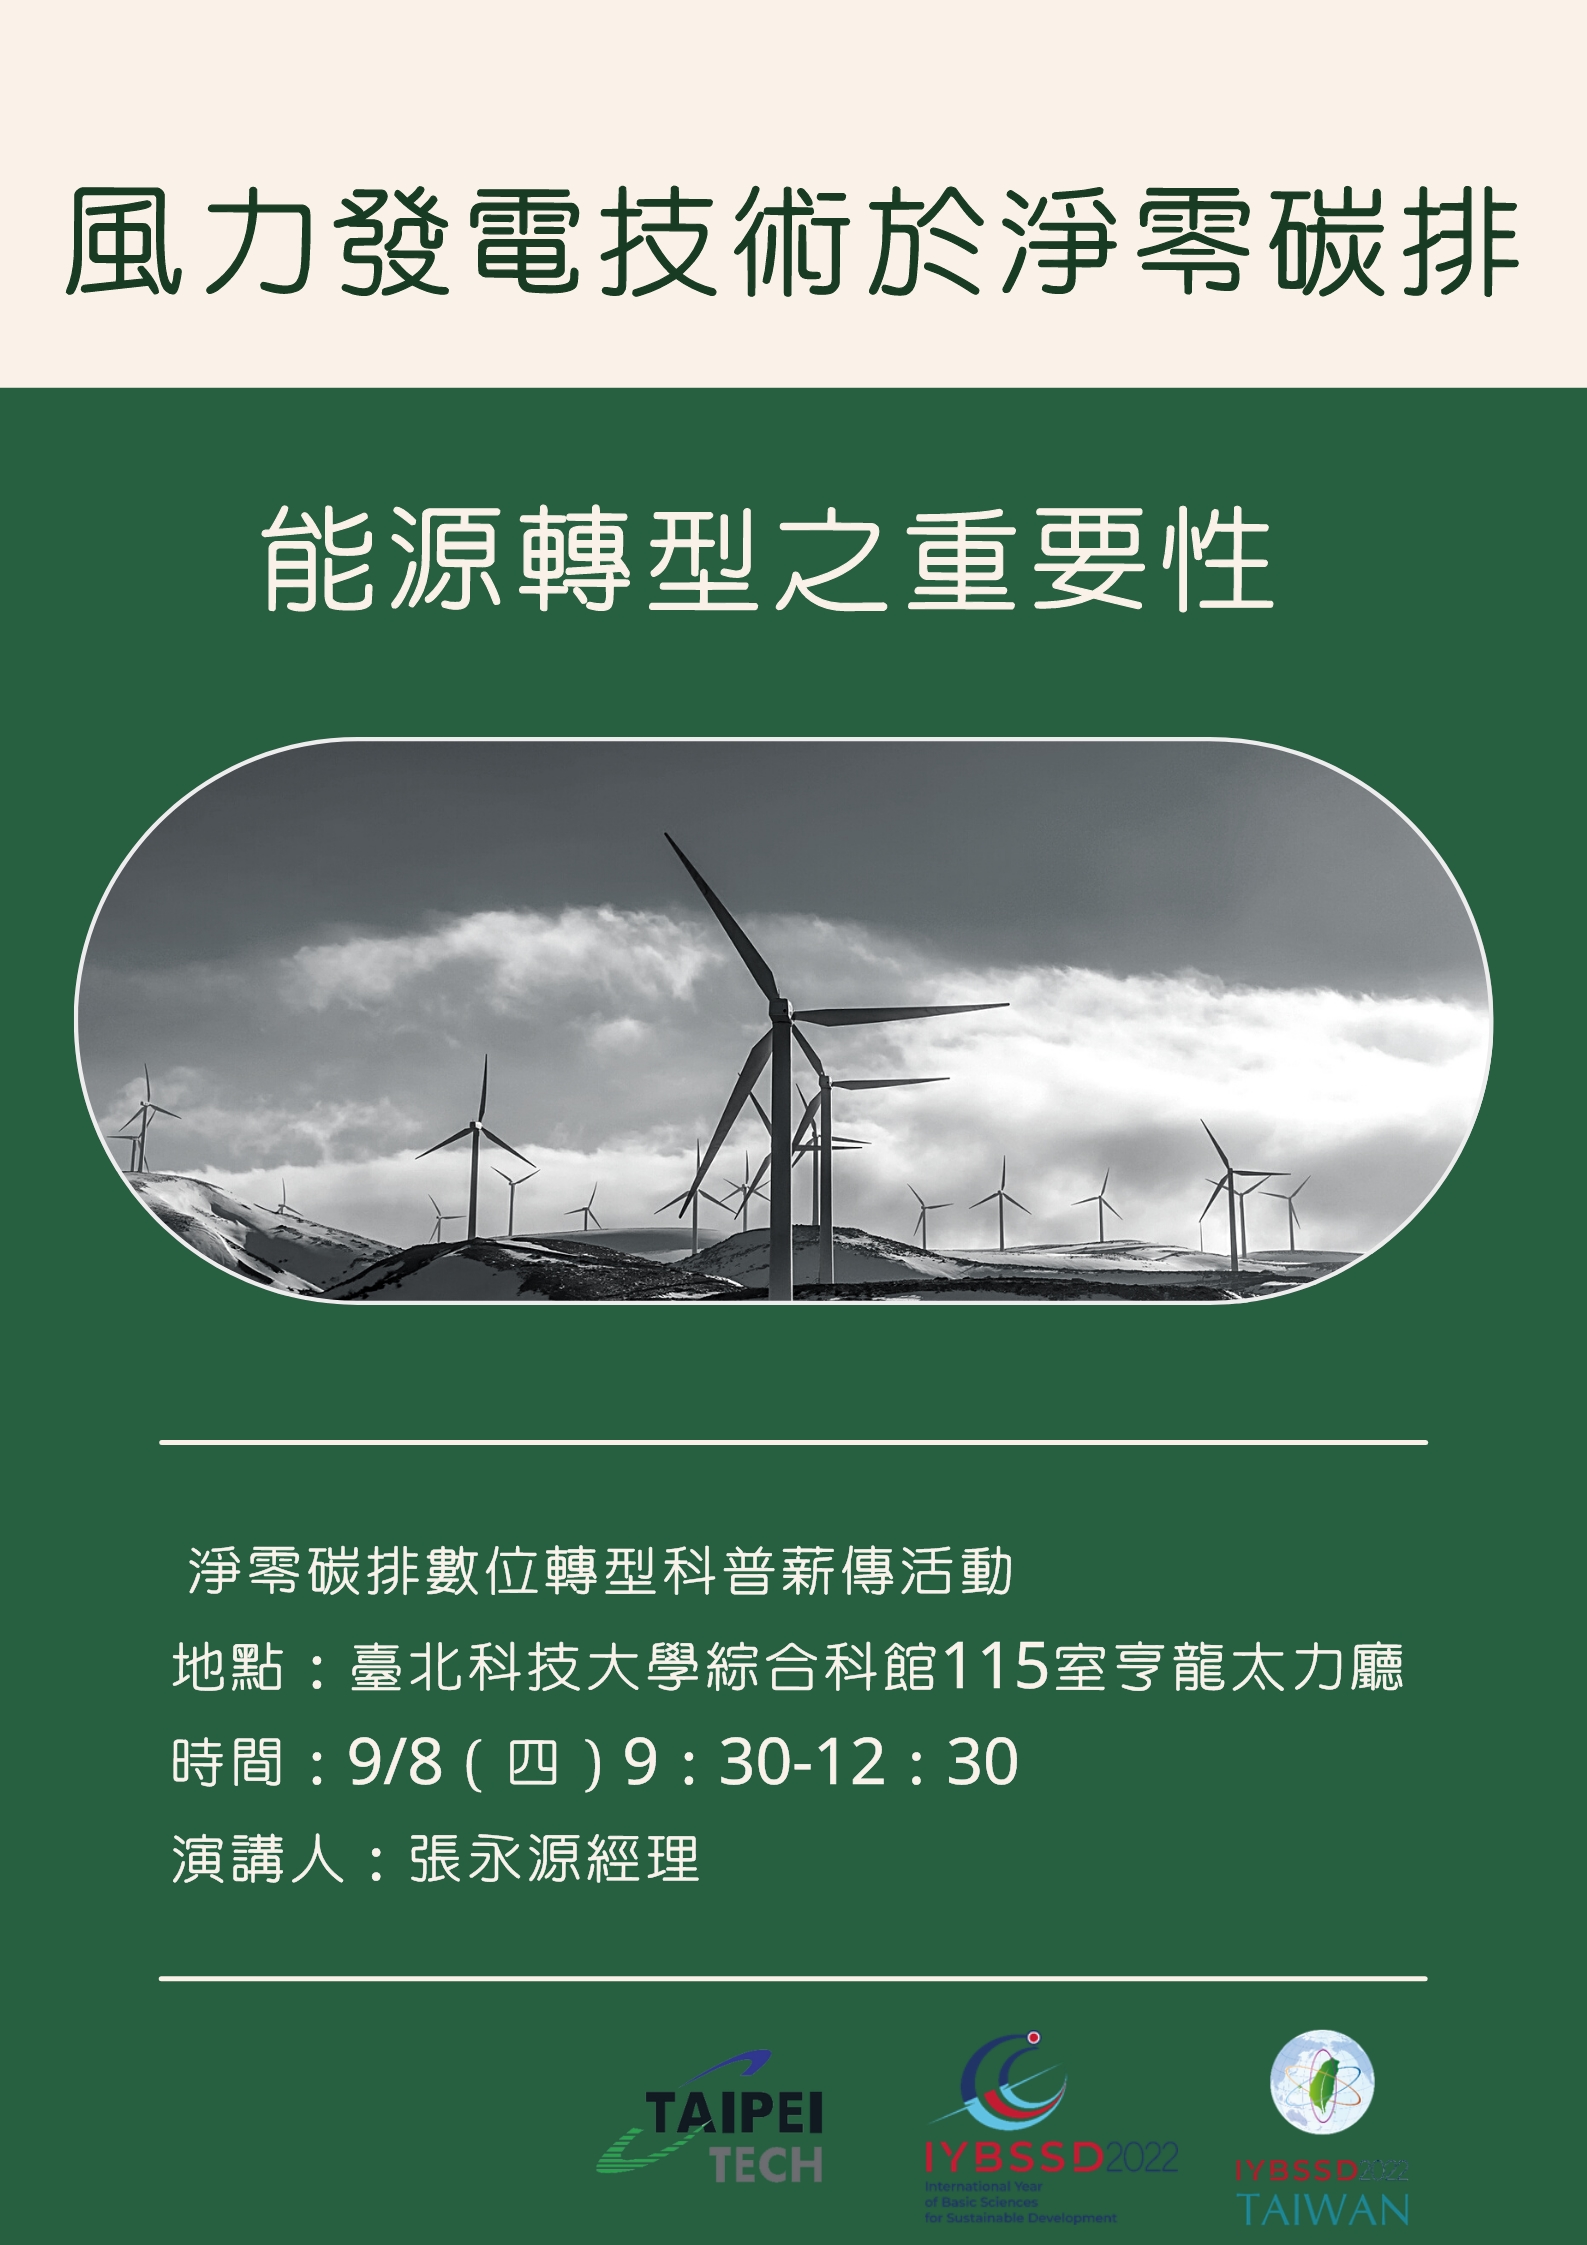 風力發電技術於淨零碳排能源轉型之重要性宣傳用圖片/海報